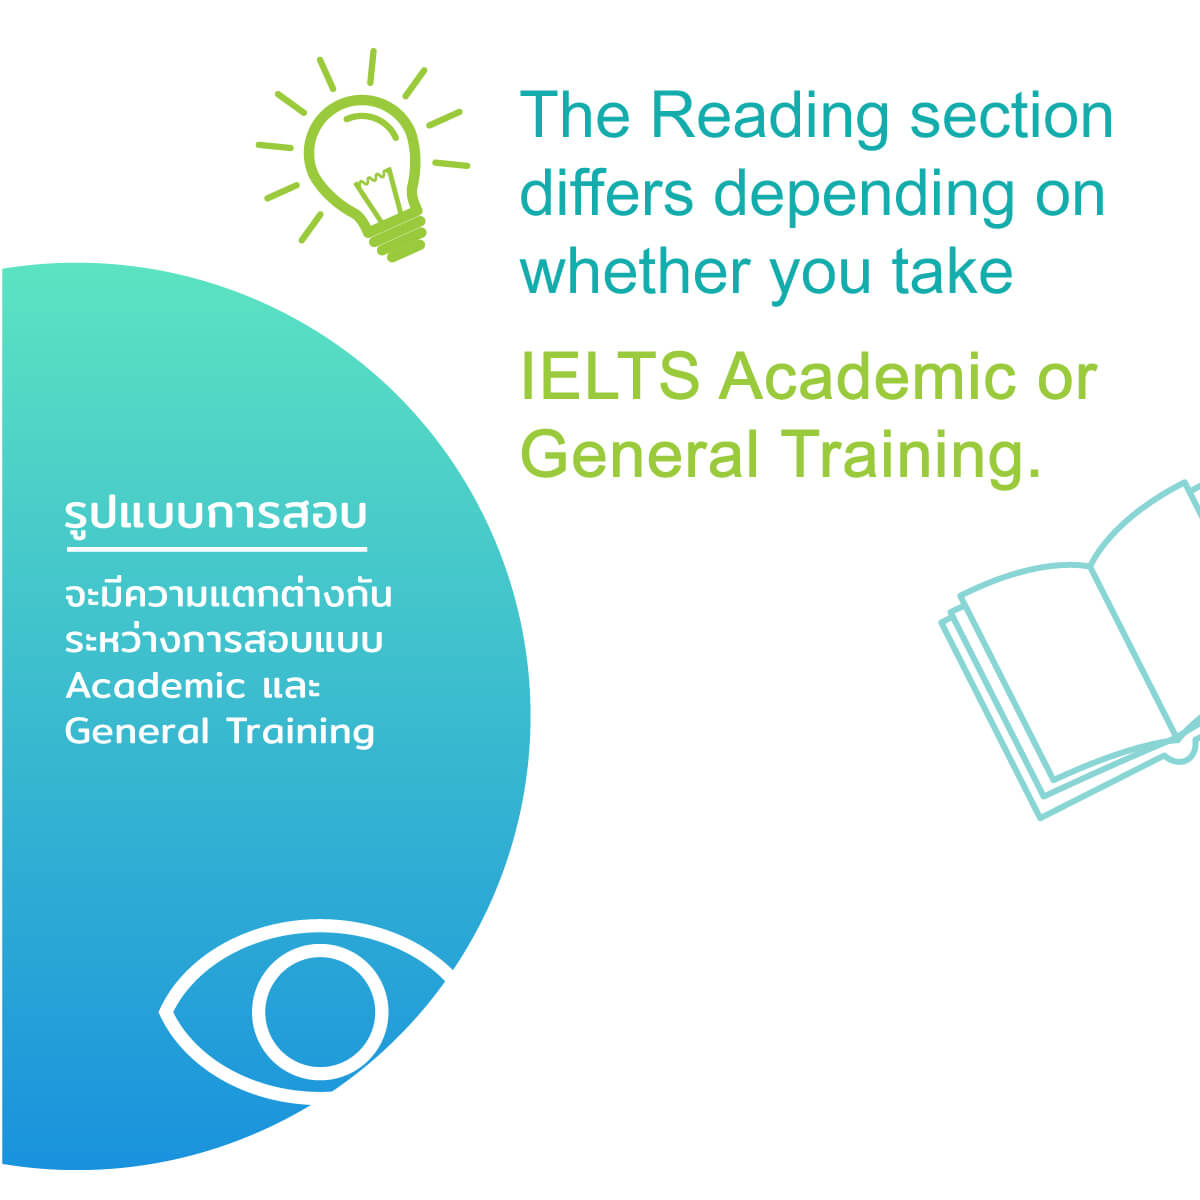 ข้อแตกต่างในการสอบ  IELTS Reading academic กับ general training ติว IELTSเร่งรัด เรียน IELTS รับรองผล โดยครูสอน IELTS มากประสบการณ์ เน้นเทคนิคทำข้อสอบ เพื่อคะแนน IELTS สูงสุด